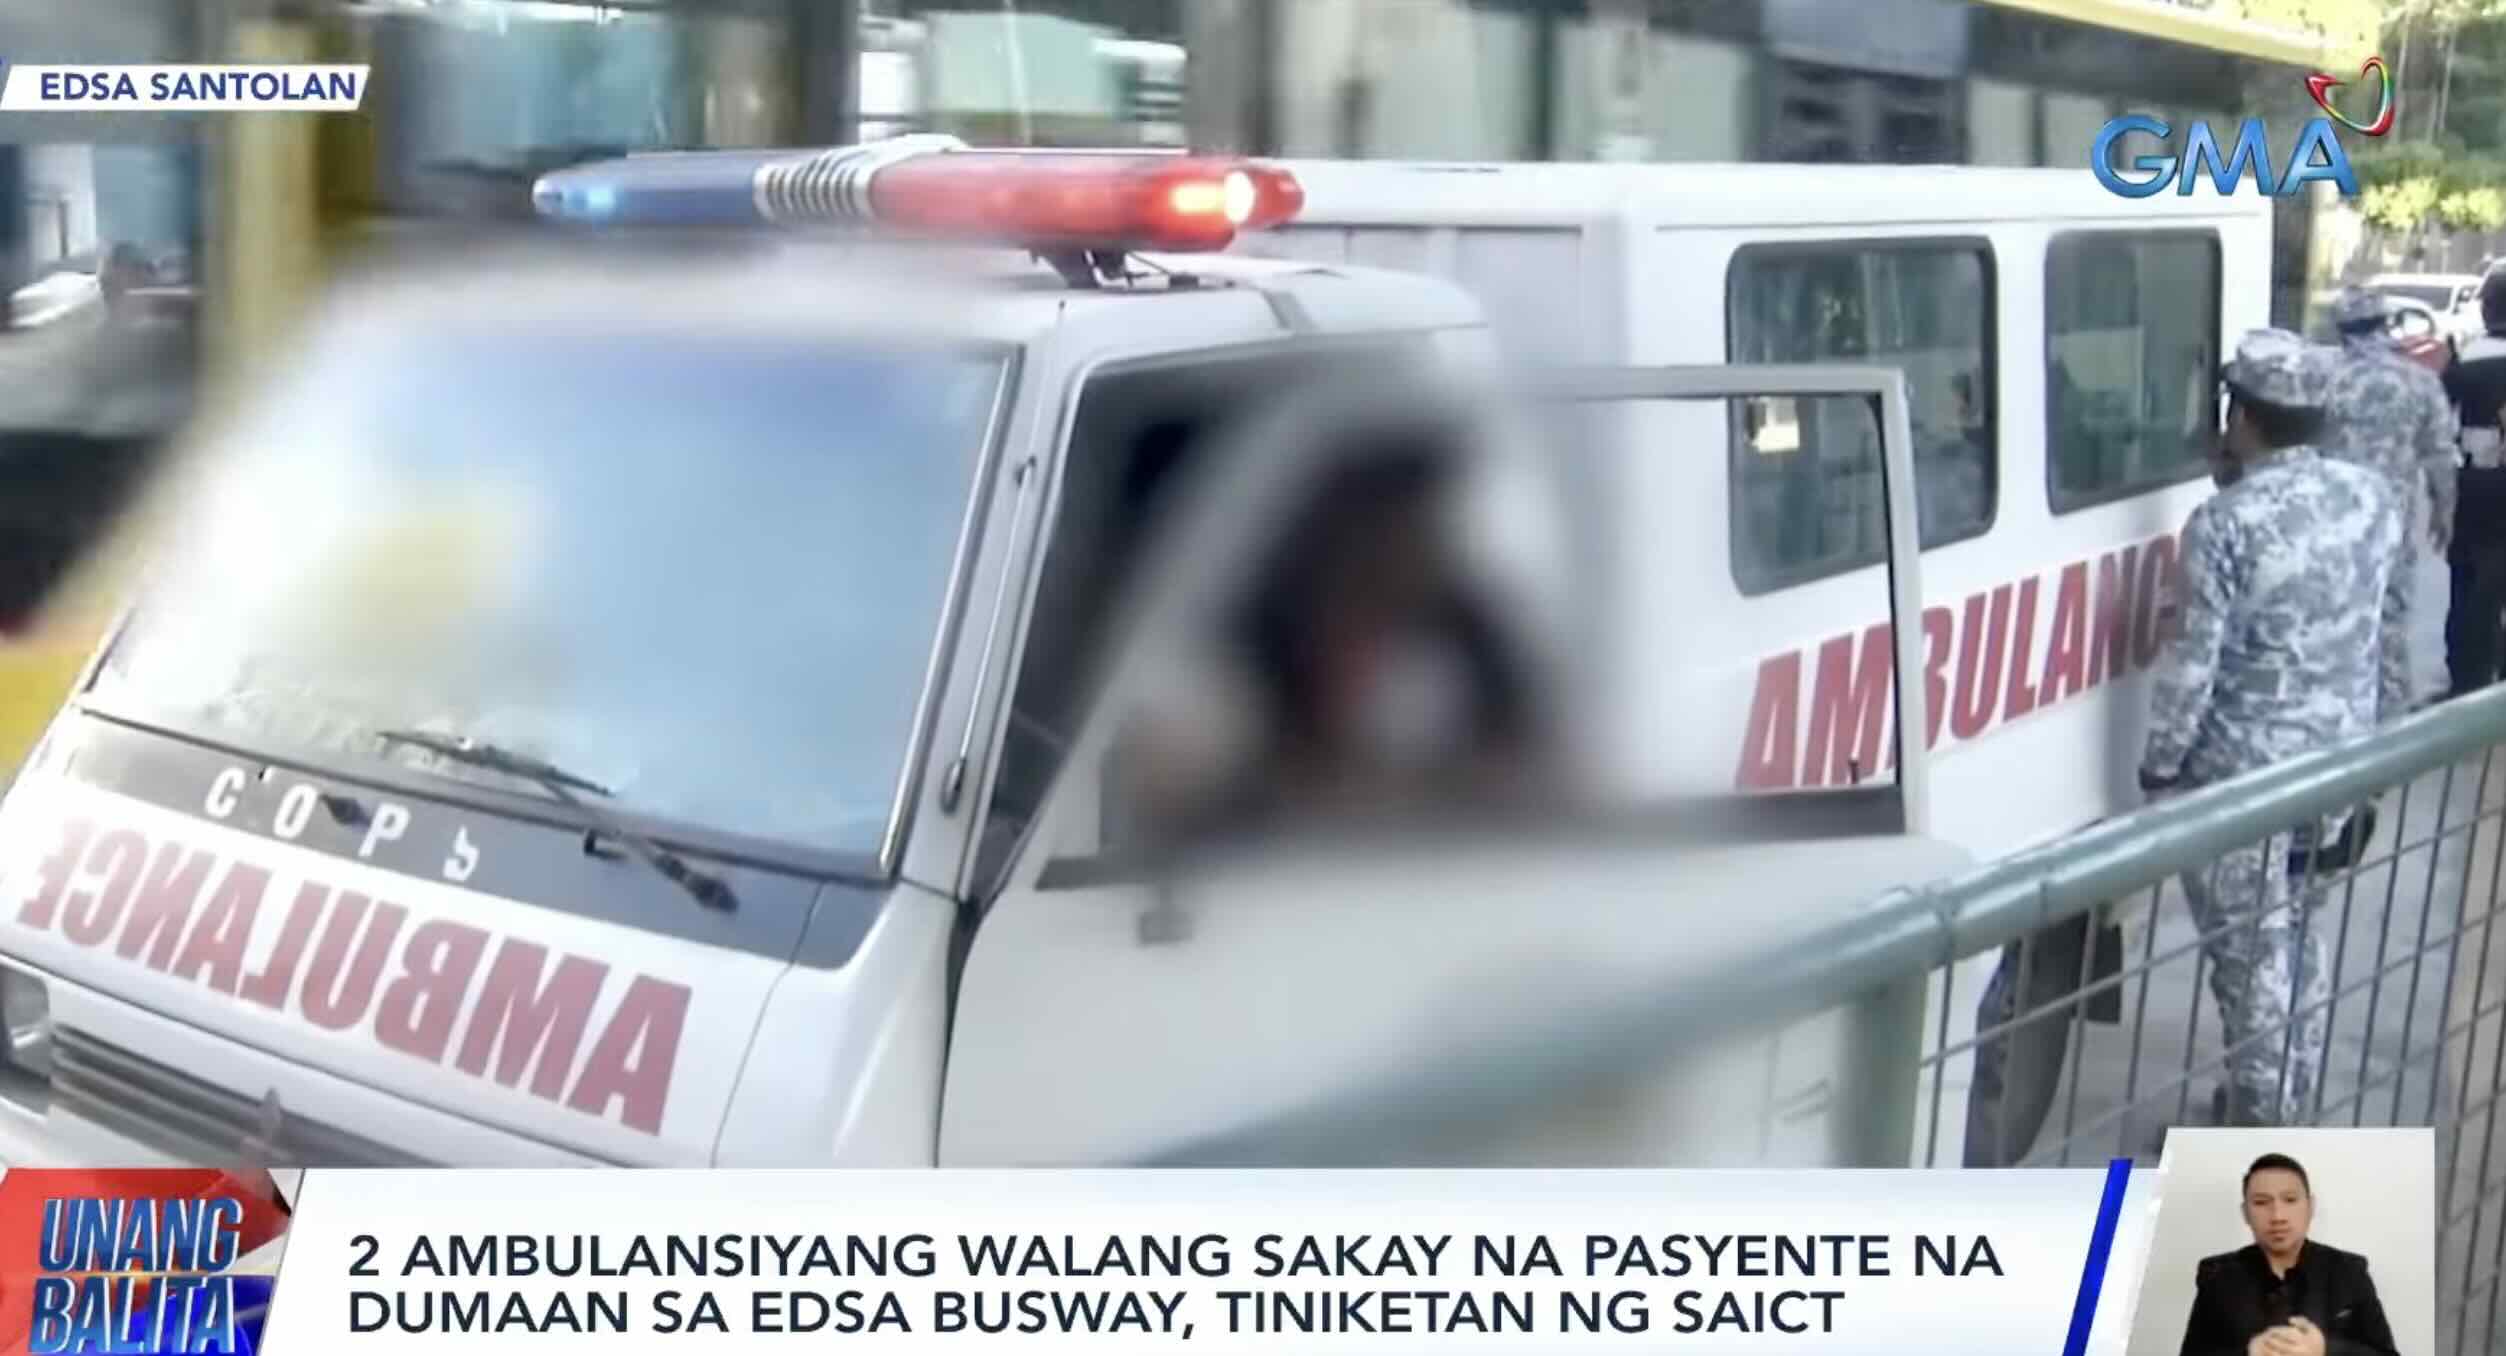 2 ambulansiya na walang sakay na pasyente na dumaan sa EDSA busway, tiniketan thumbnail